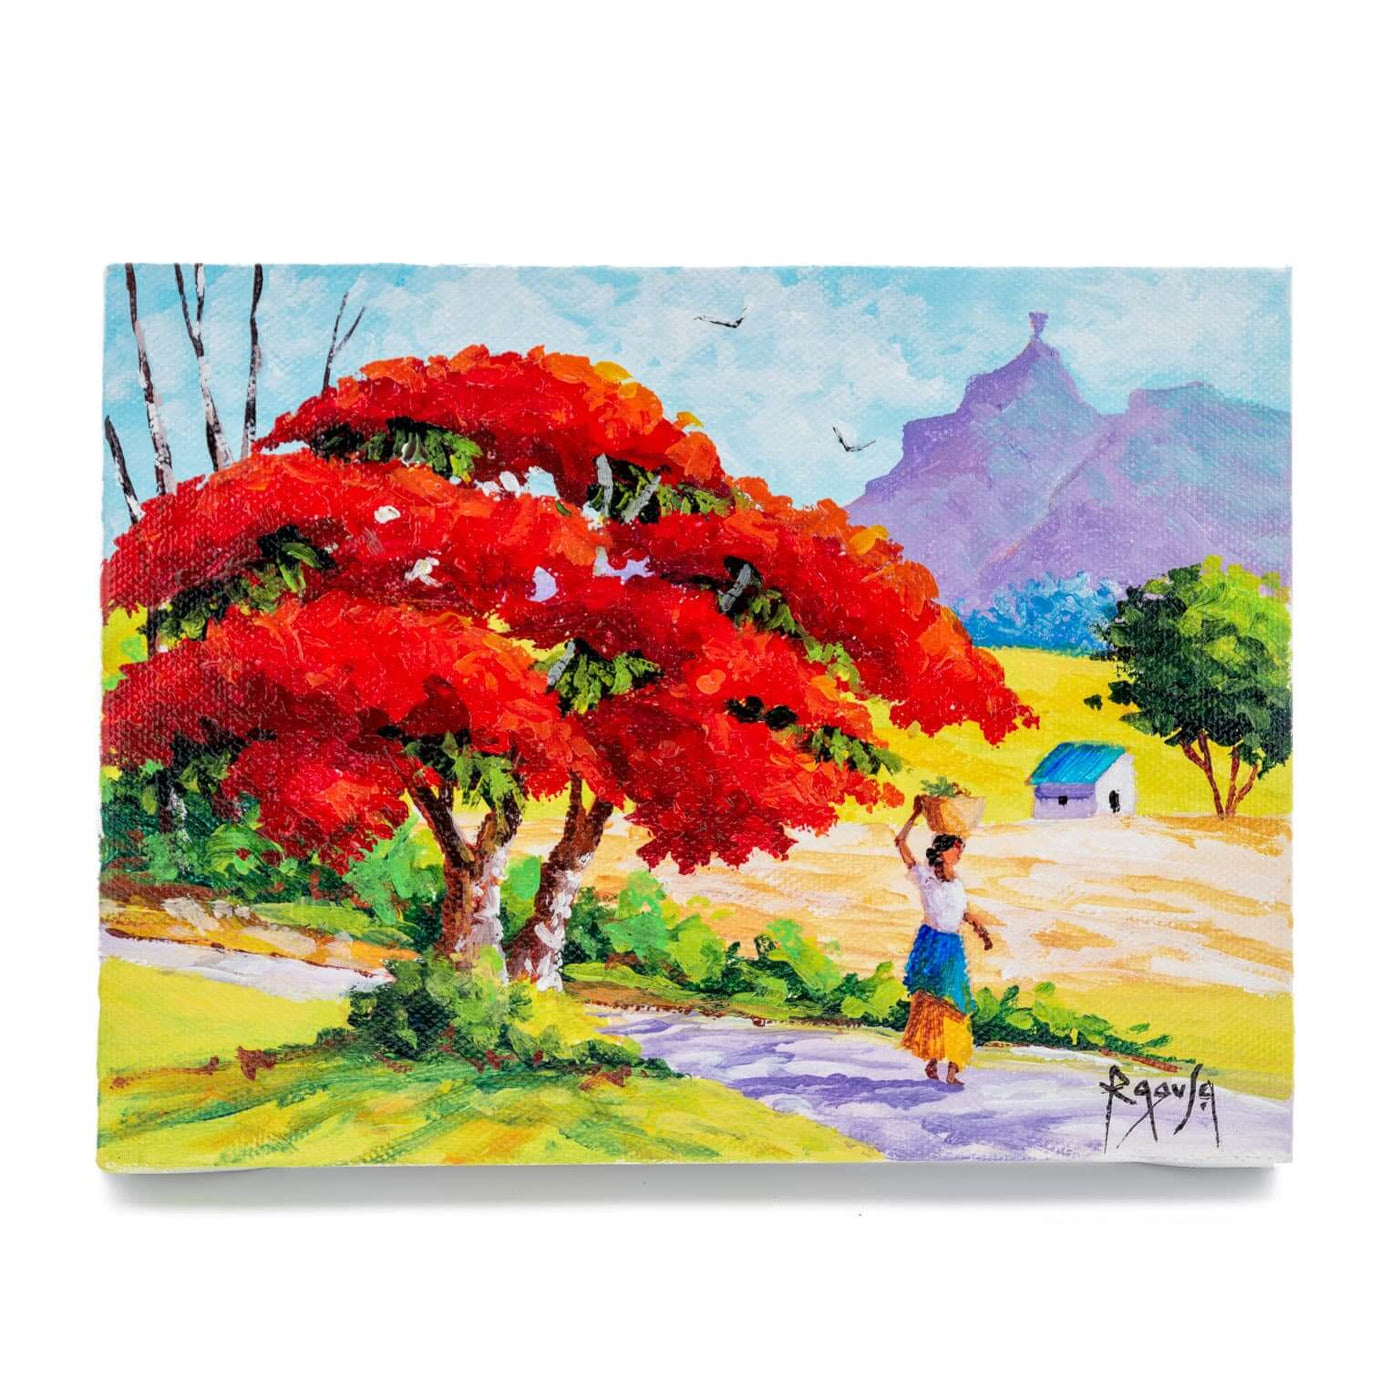 Mauritius-Authentic-HandMade-Painting-Pino Ragusa, "Pieter Both mountain"-DodoMarket